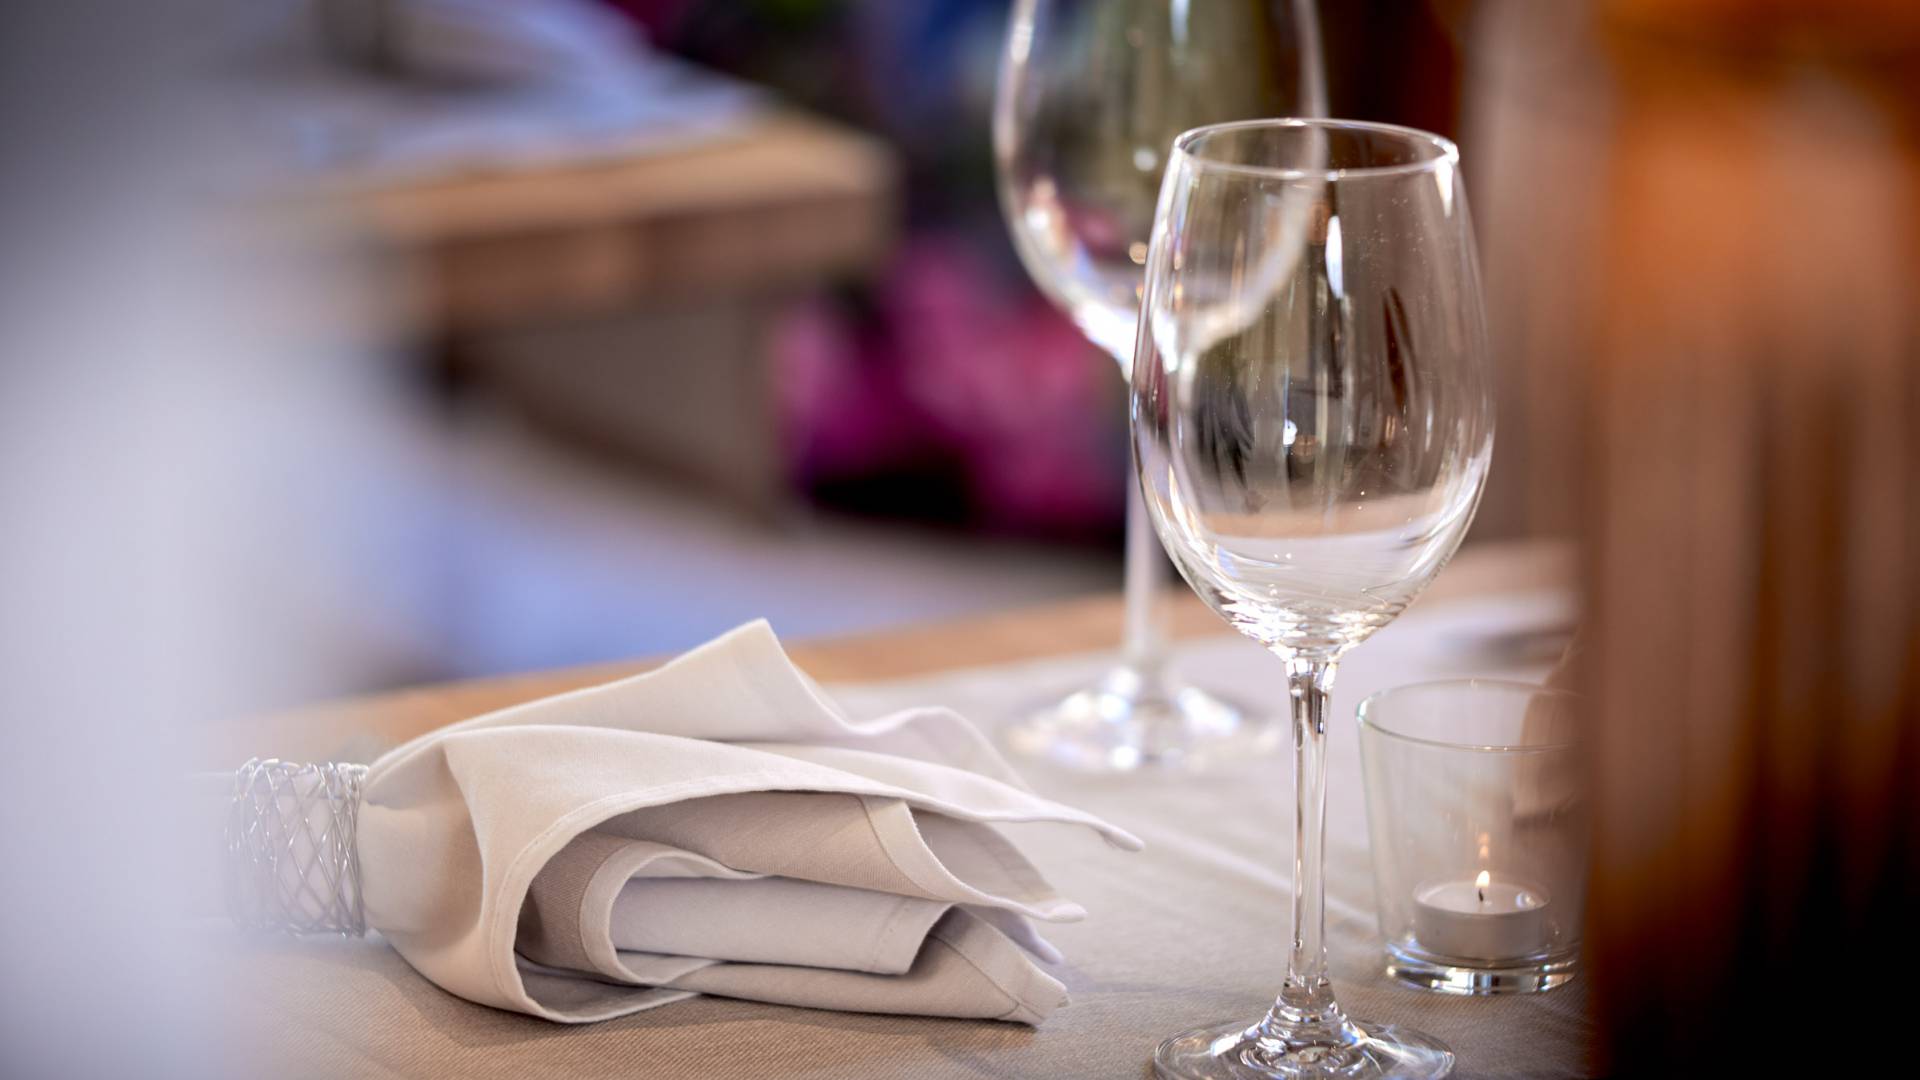 Weingläser und Servietten auf Tisch